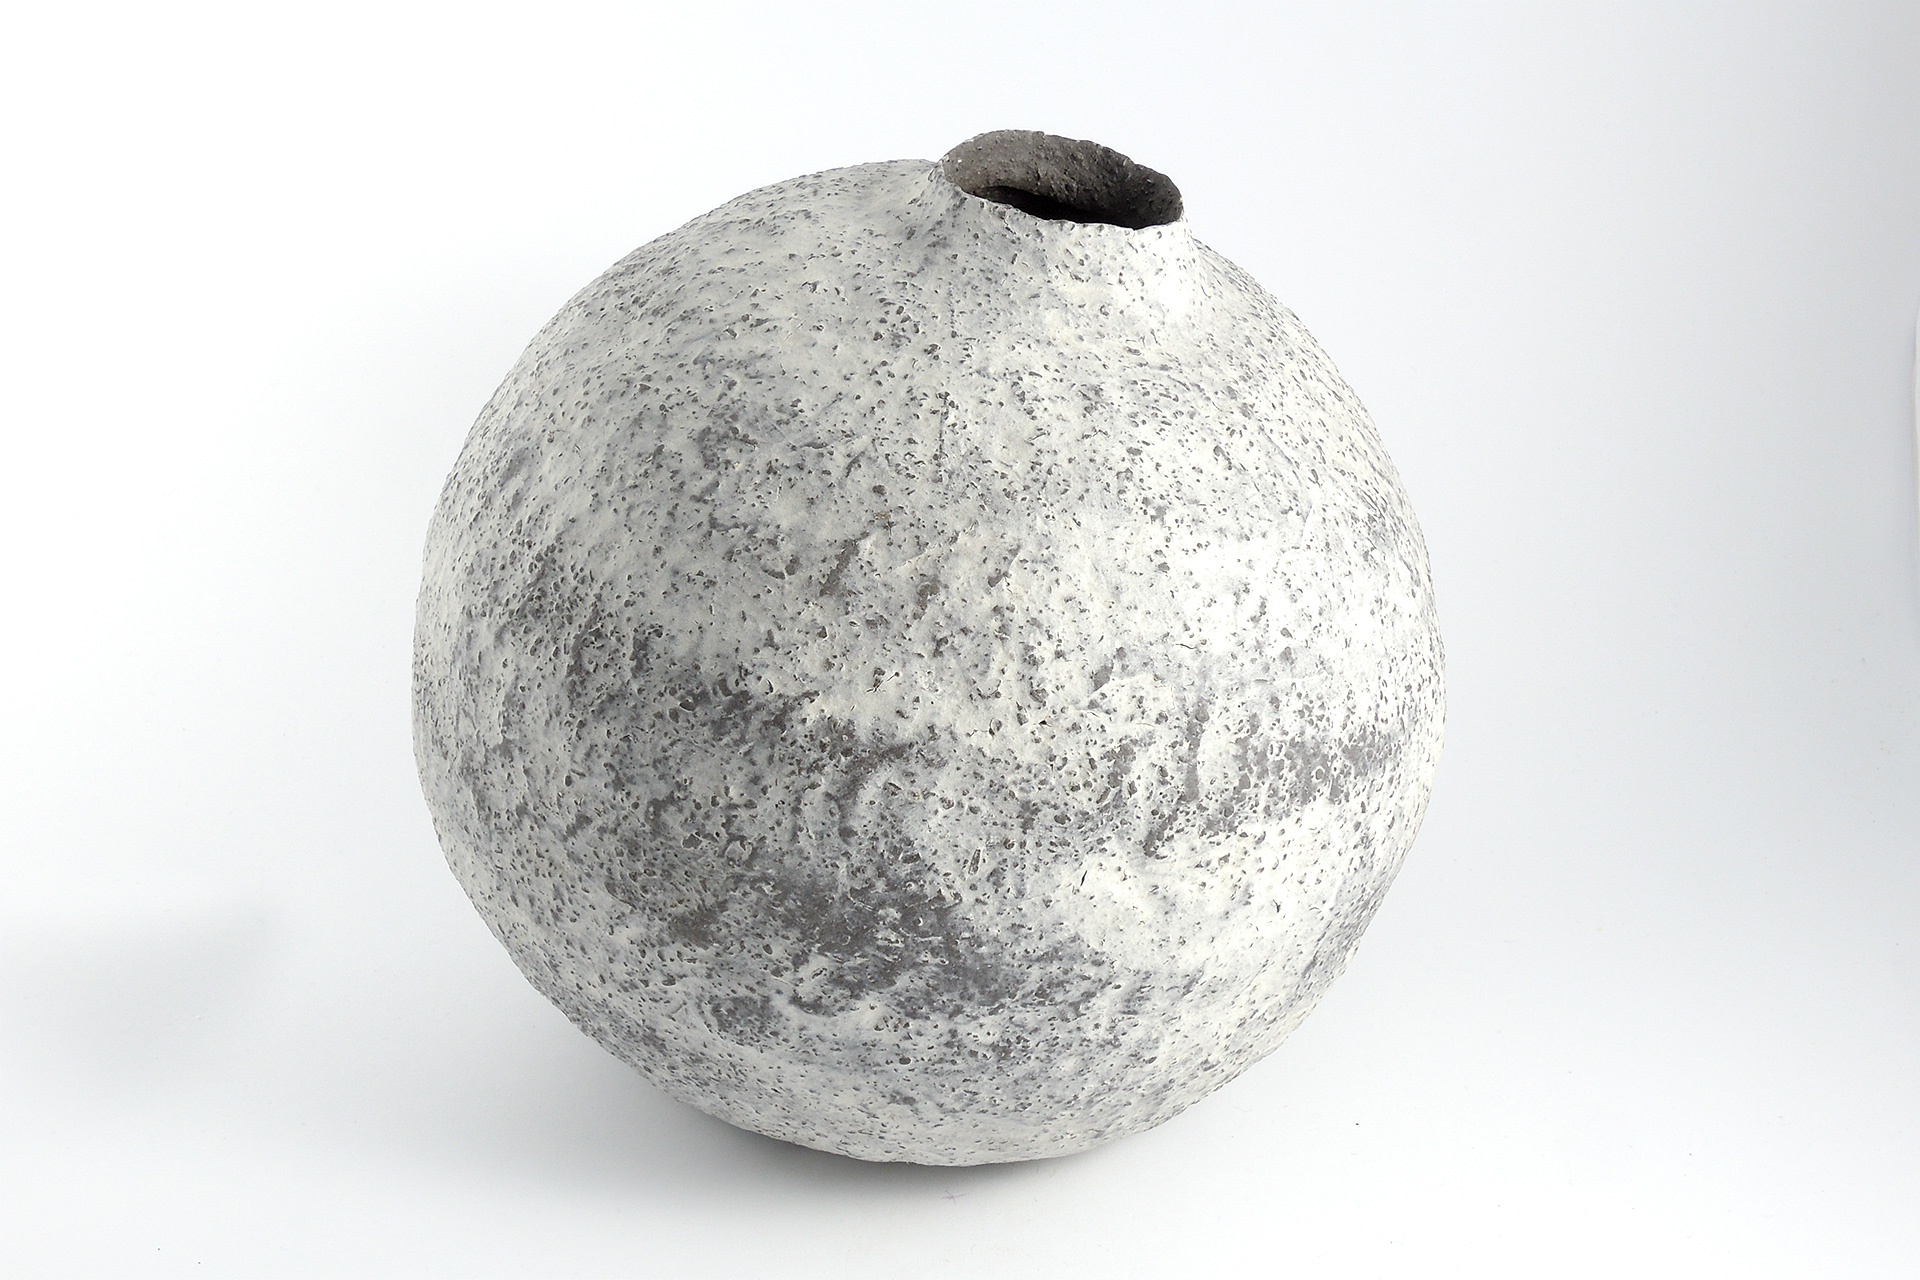 Spherical Vase